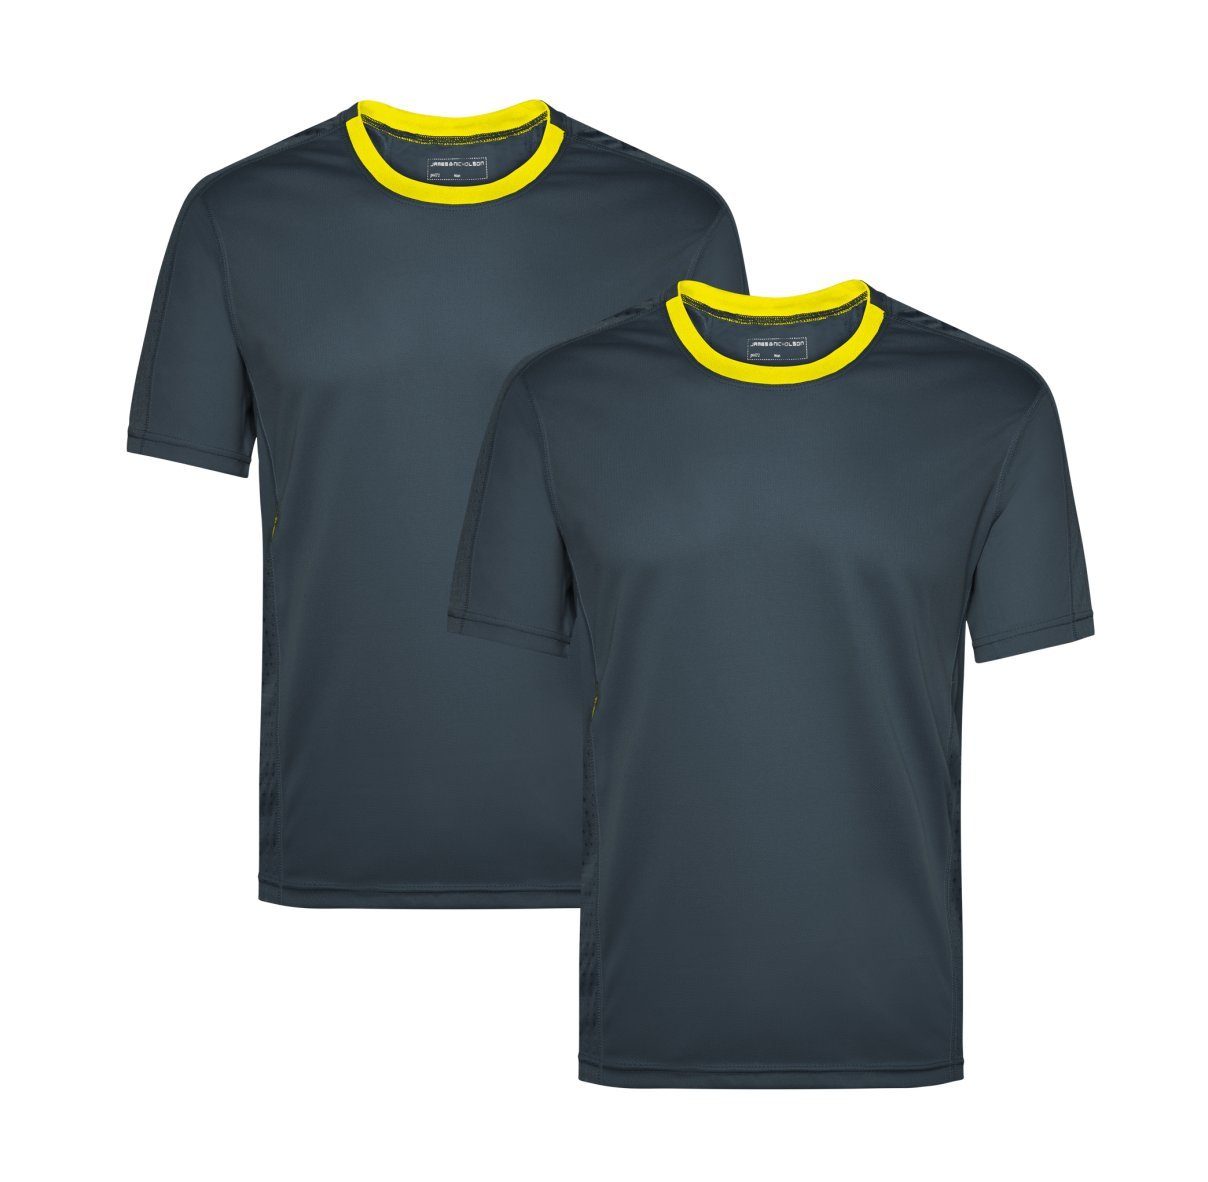 James & Nicholson Laufshirt Doppelpack Herren Kurzarm Laufshirt Running T-Shirt JN472 (Doppelpack, 2er-Pack) Atmungsaktiv und Feuchtigkeitsregulierend iron-grey/lemon